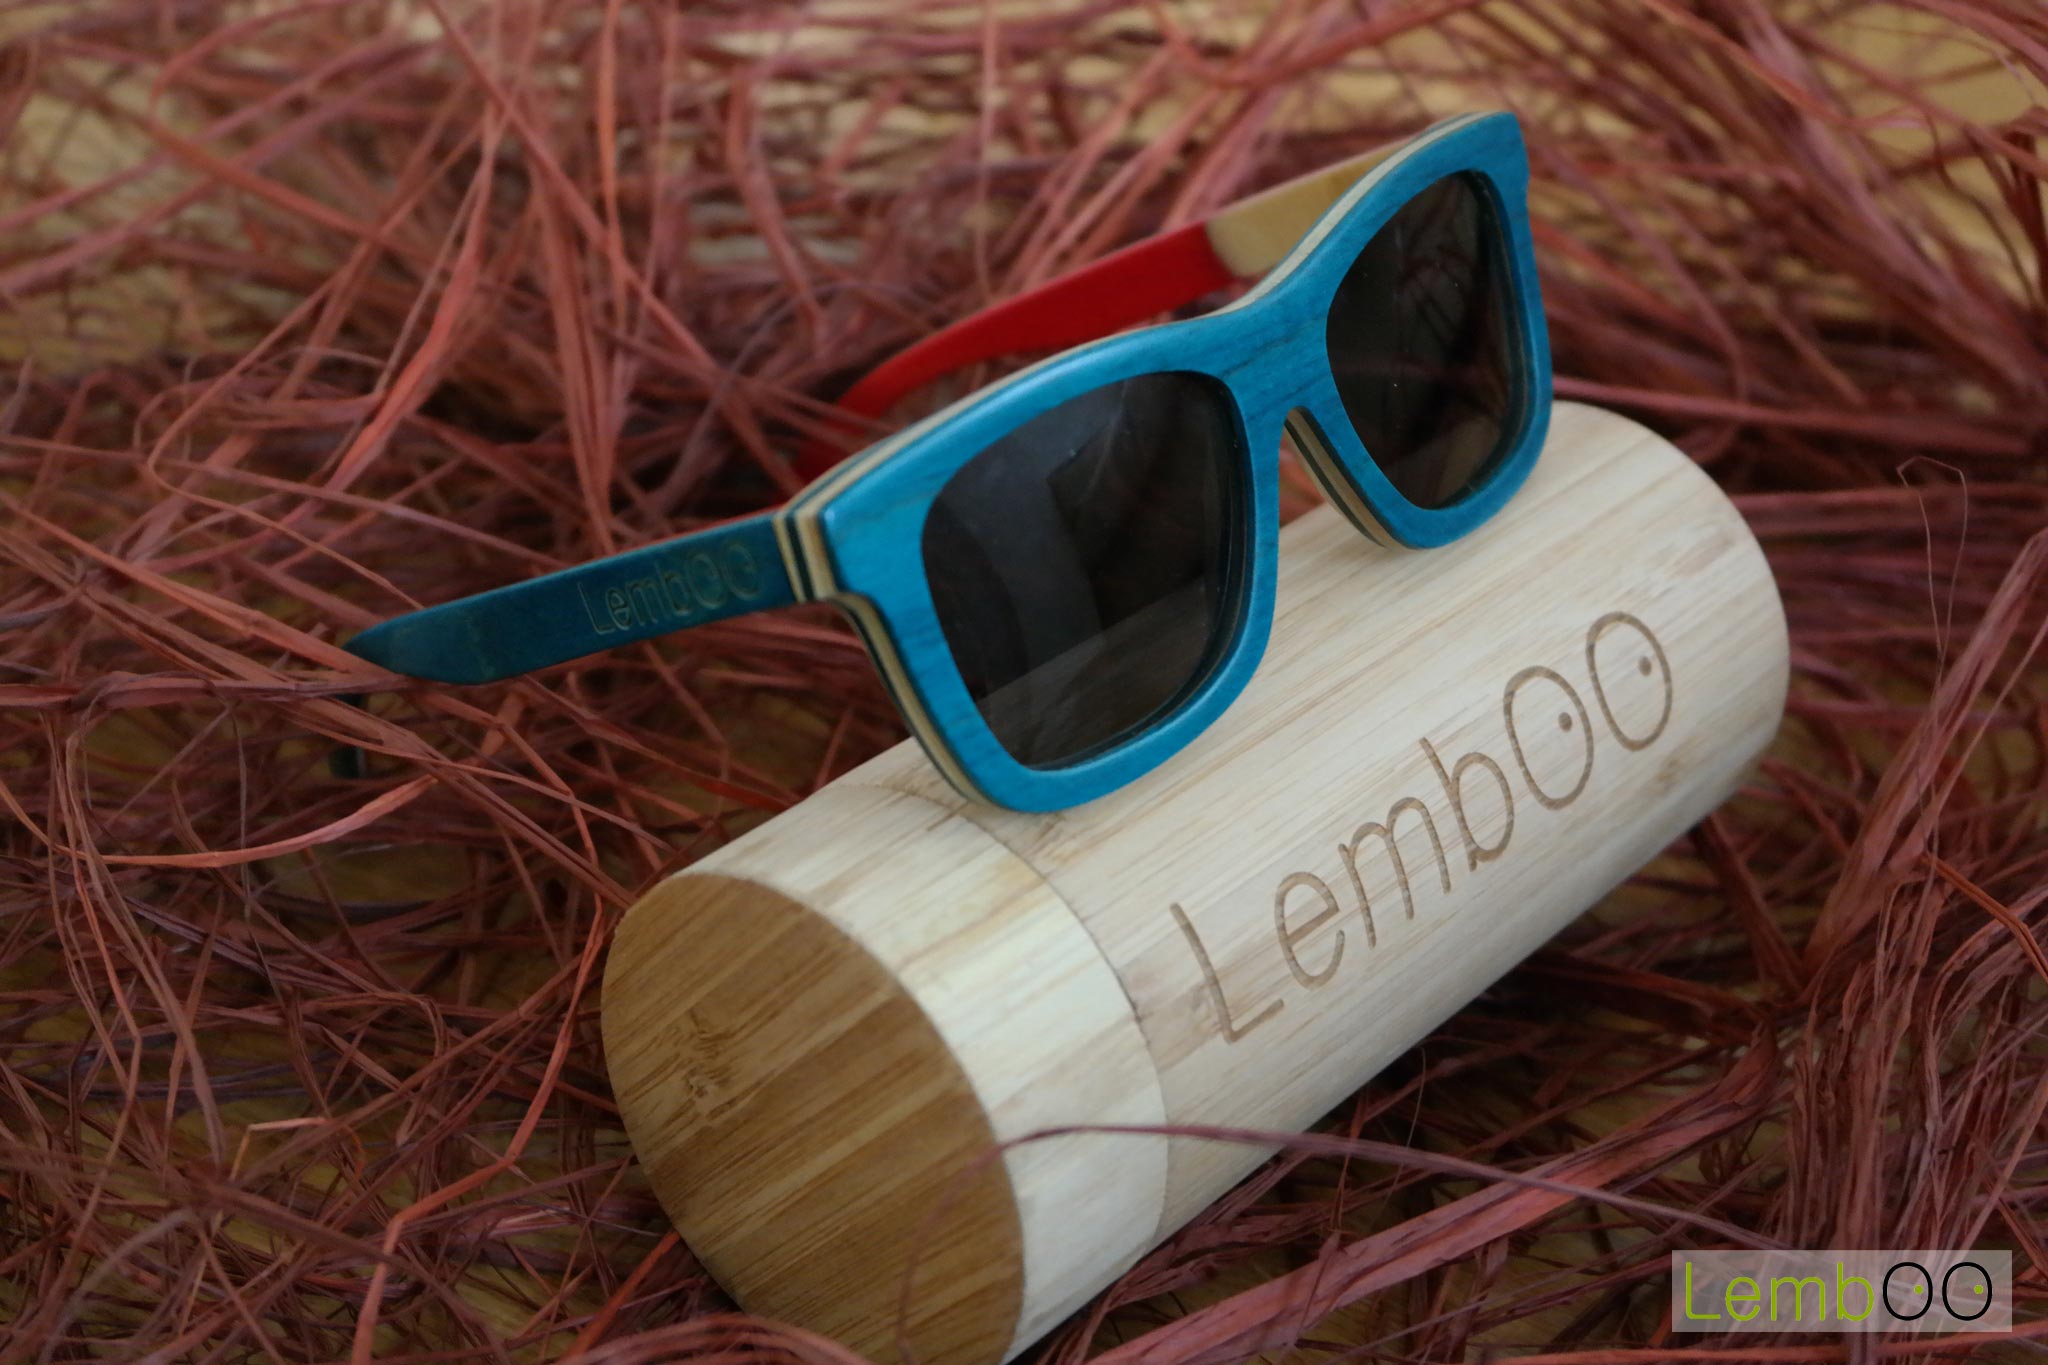 gafas de sol de Lemboo